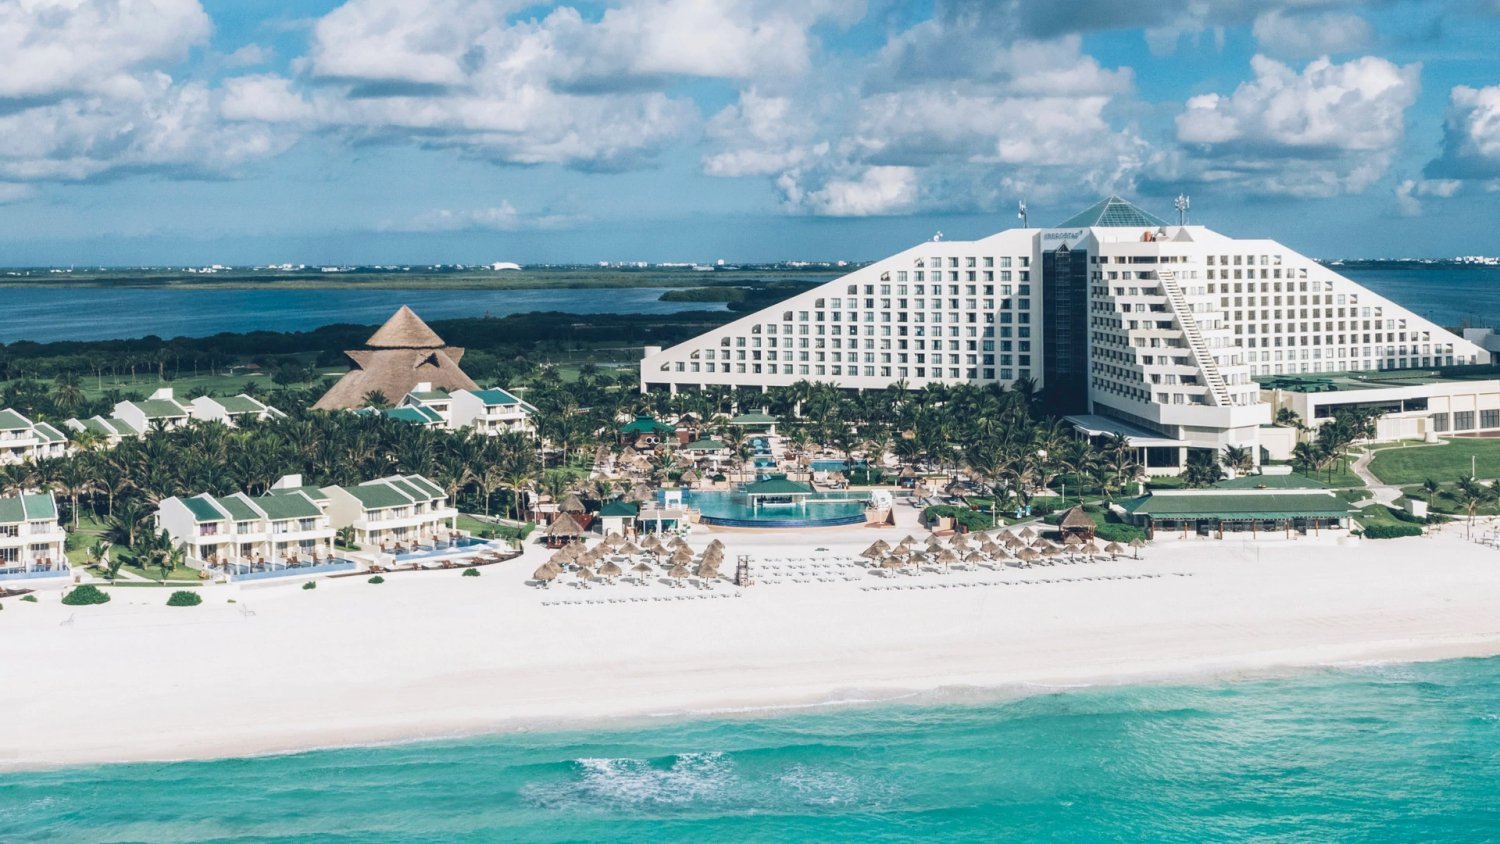 Best hotels in Cancun